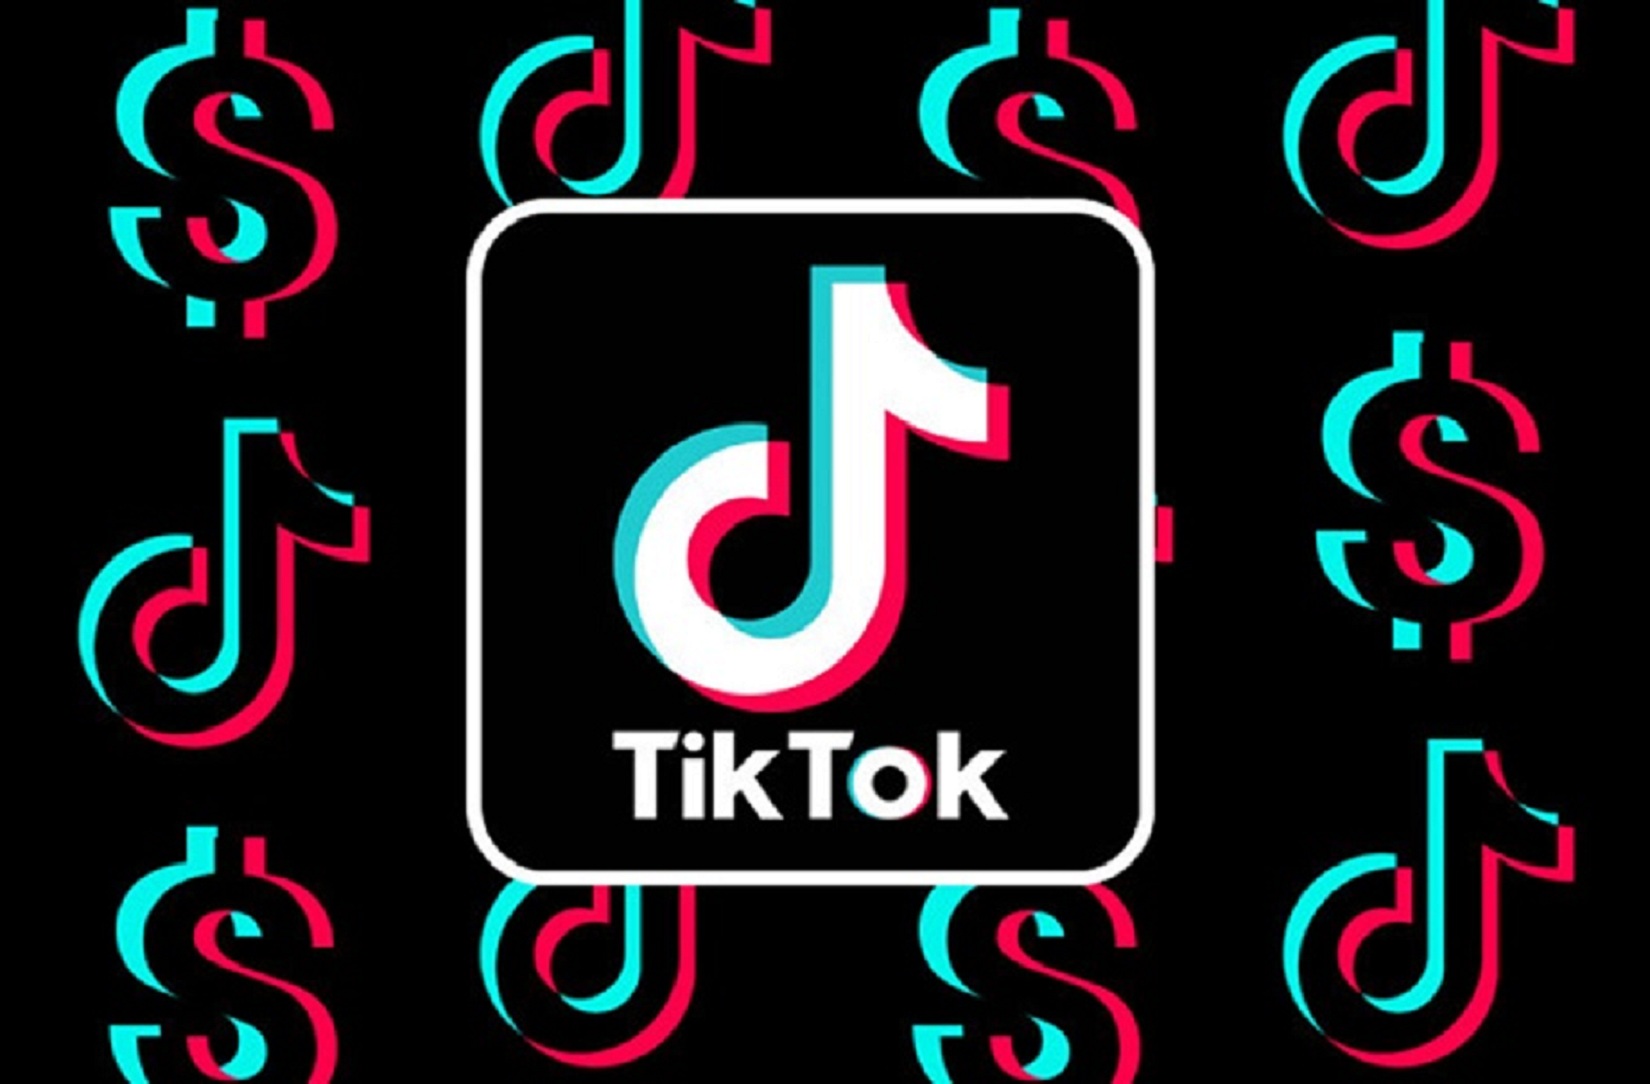 Tải Tiktok nhận tiền đến 140.000đ và giới thiệu bạn bè nhận thêm 1.400.000đ